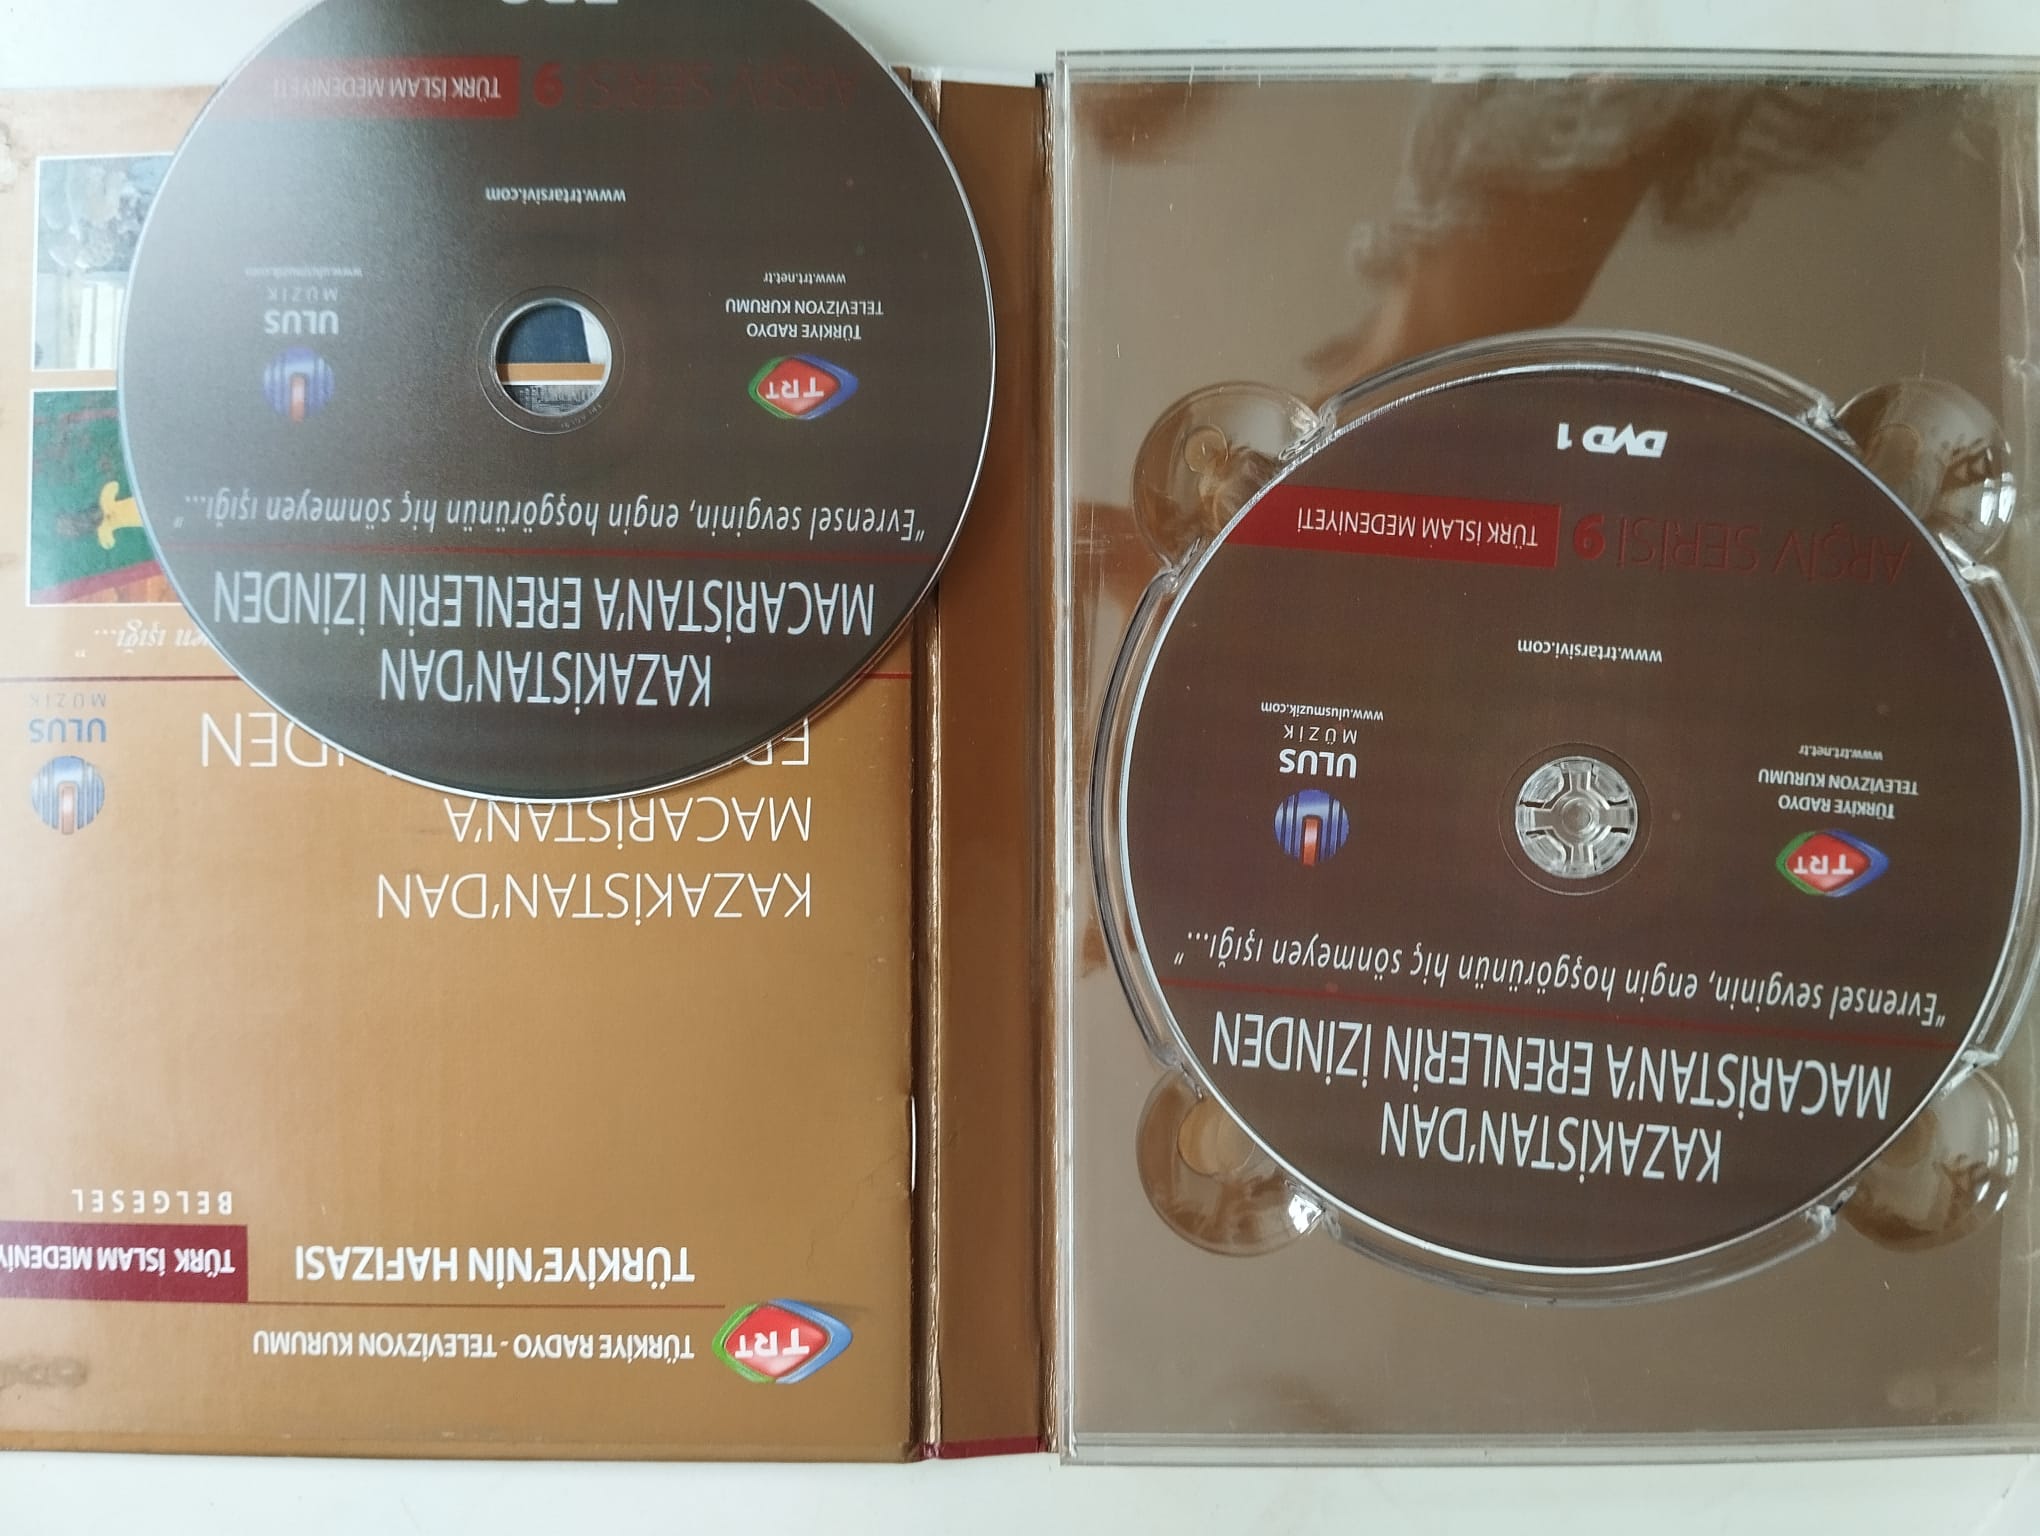 Kazakistan’dan Macaristan’a Erenlerin İzinden / Türk İslam Medeniyeti  (TRT) - 2.El 2x DVD Belgesel